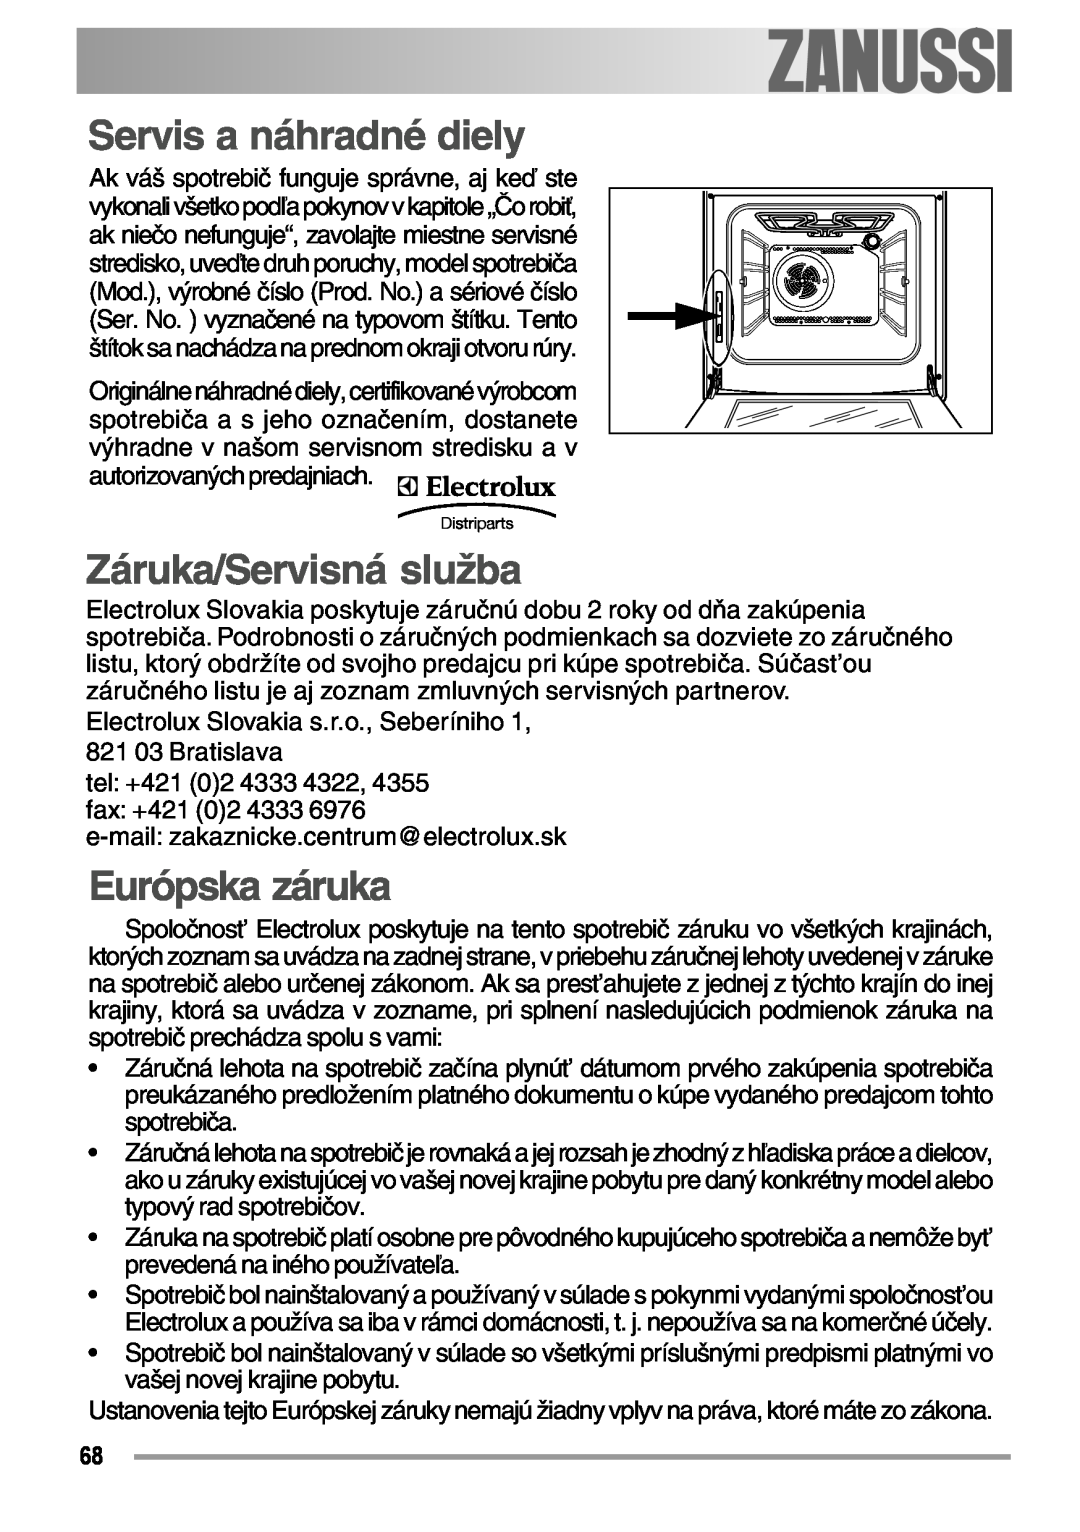 Zanussi ZOB 594 manual Servis a náhradné diely, Záruka/Servisná služba, Európska záruka, electrolux 